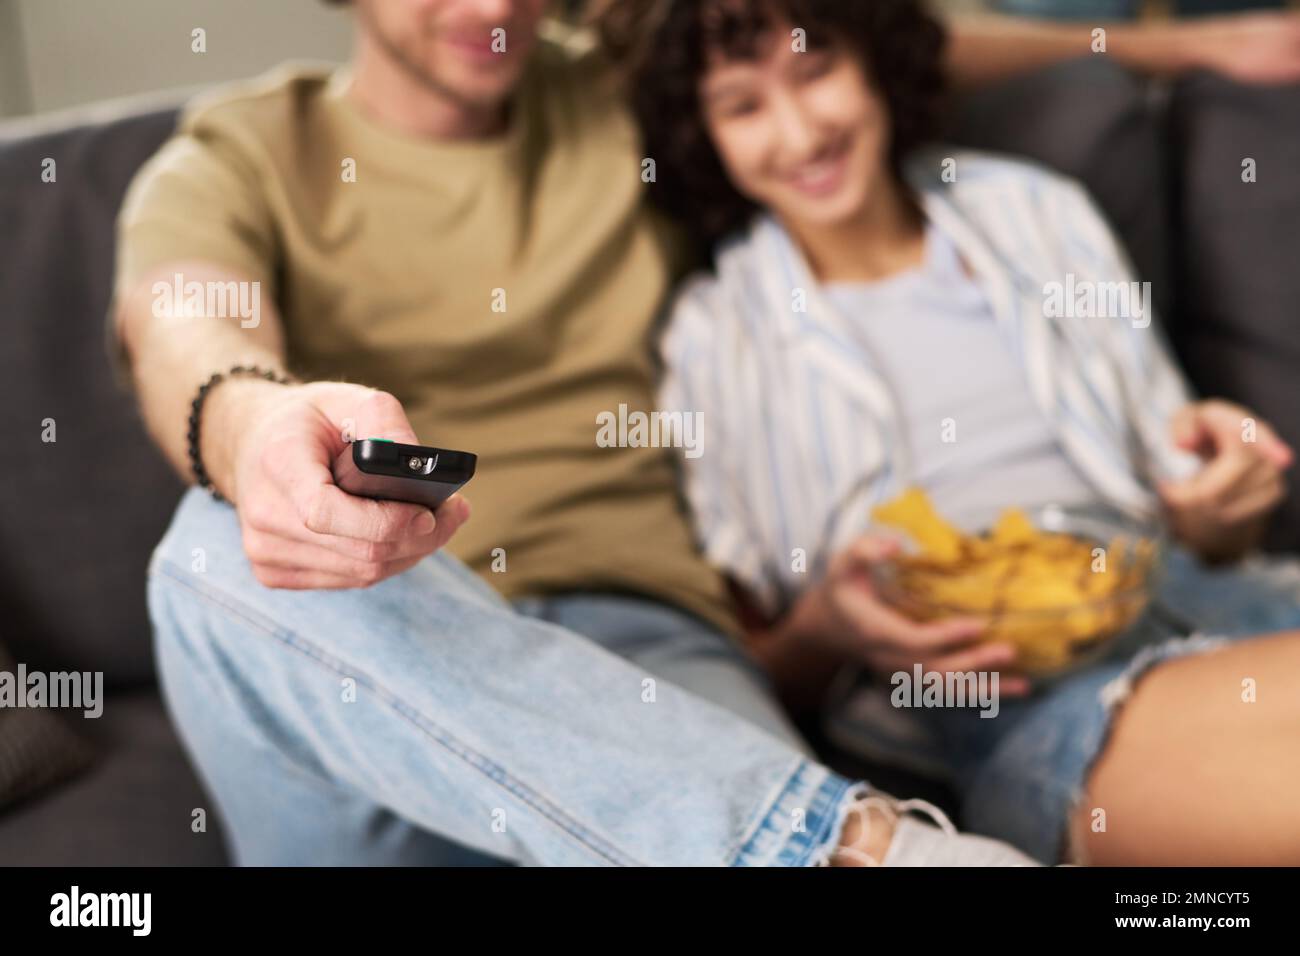 Konzentrieren Sie sich auf die Hand eines jungen, erholsamen Mannes, der die Fernbedienung hält, während er neben seiner Frau mit Kartoffelchips sitzt und einen fernsehsender auswählt Stockfoto